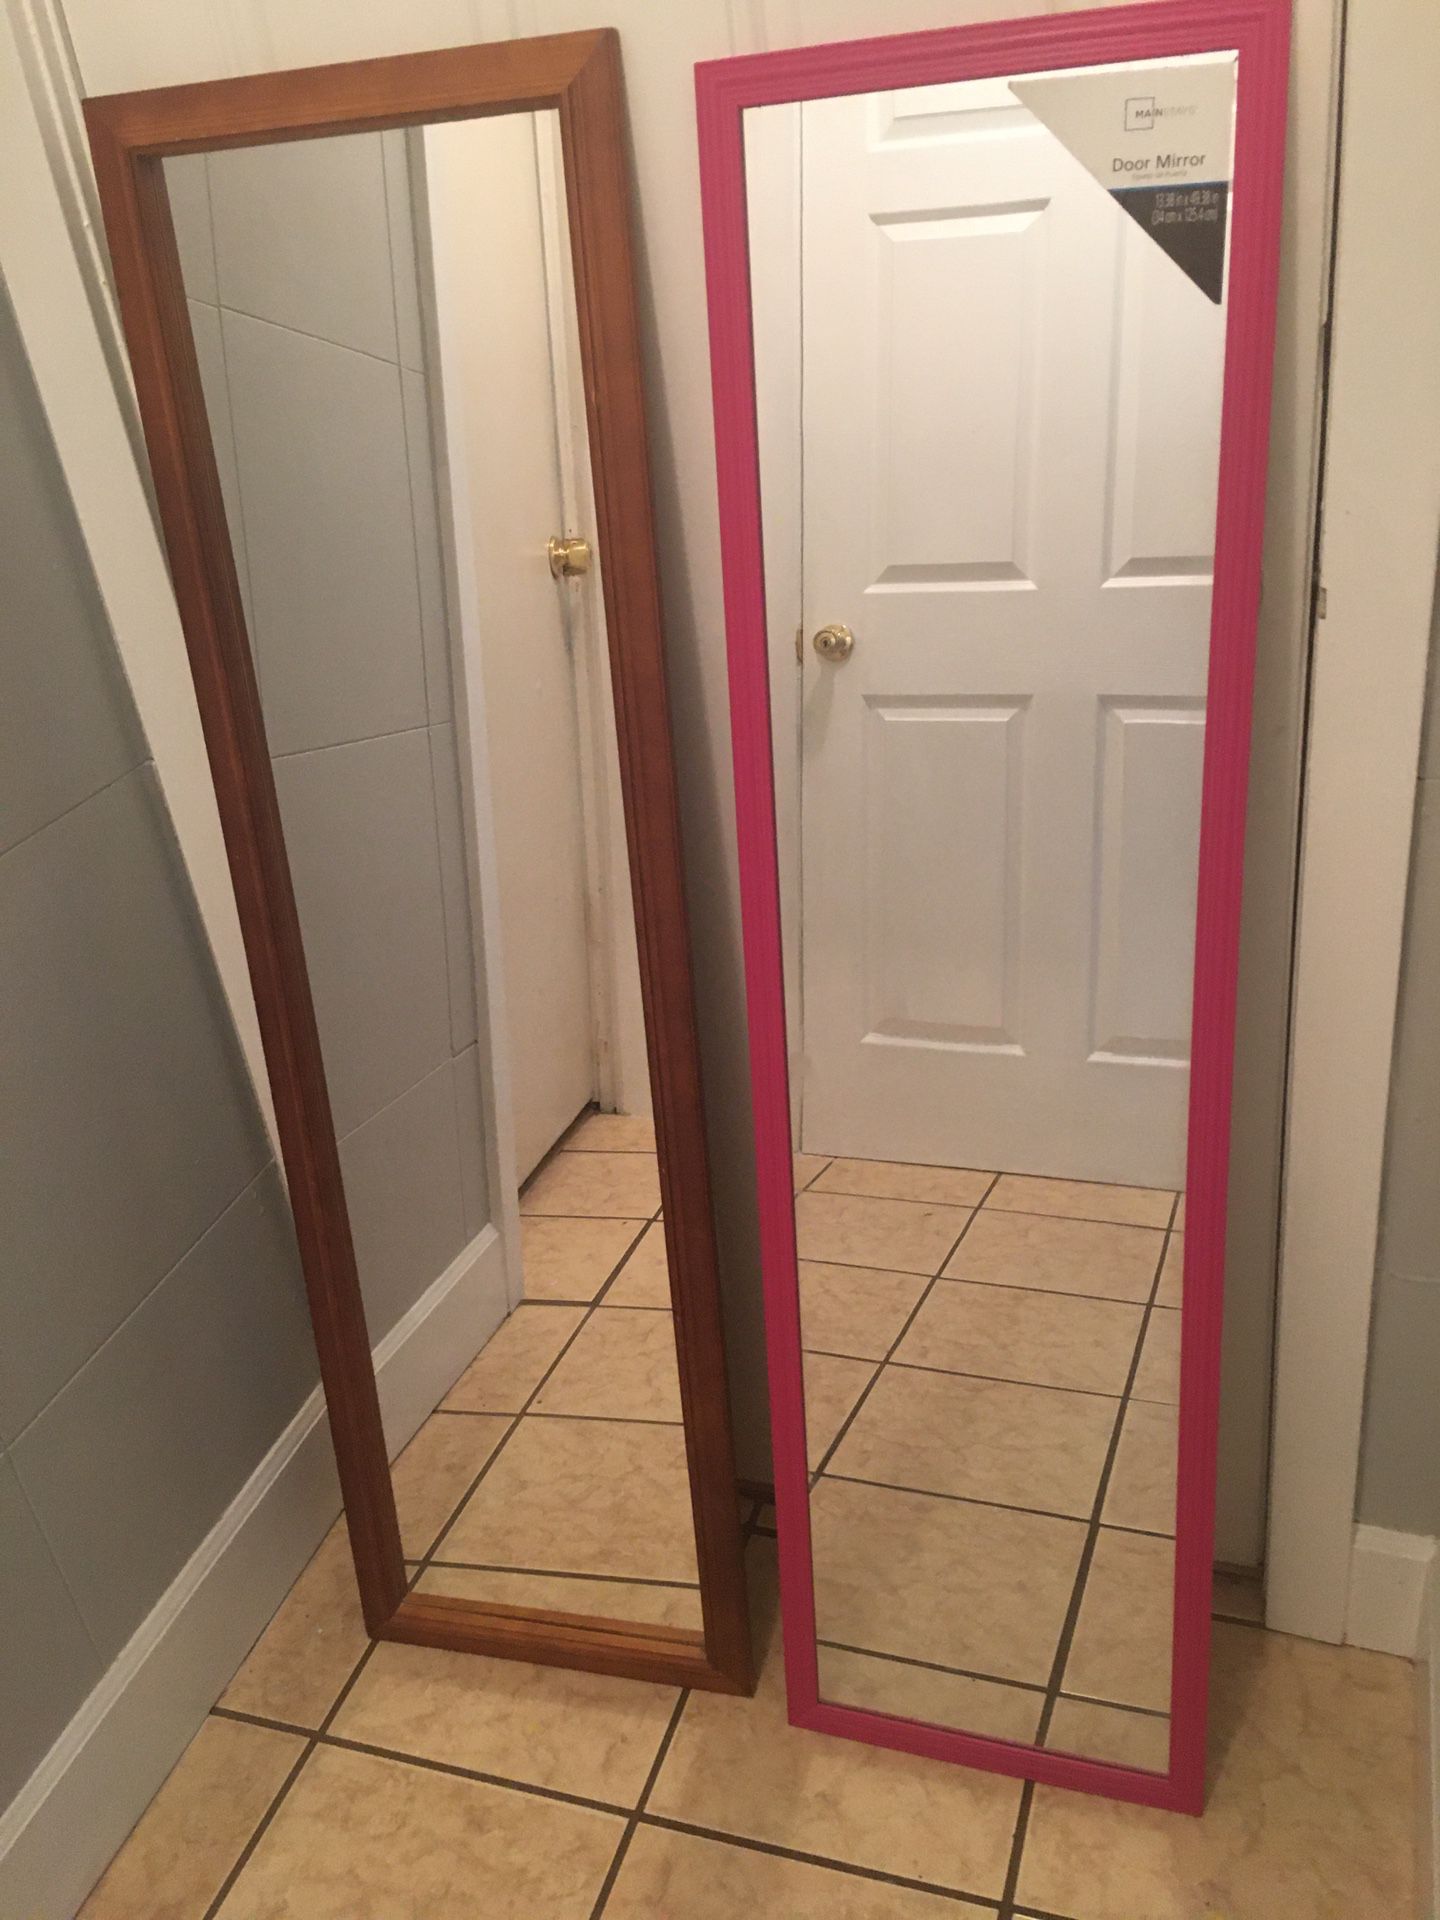 Wooden door mirror